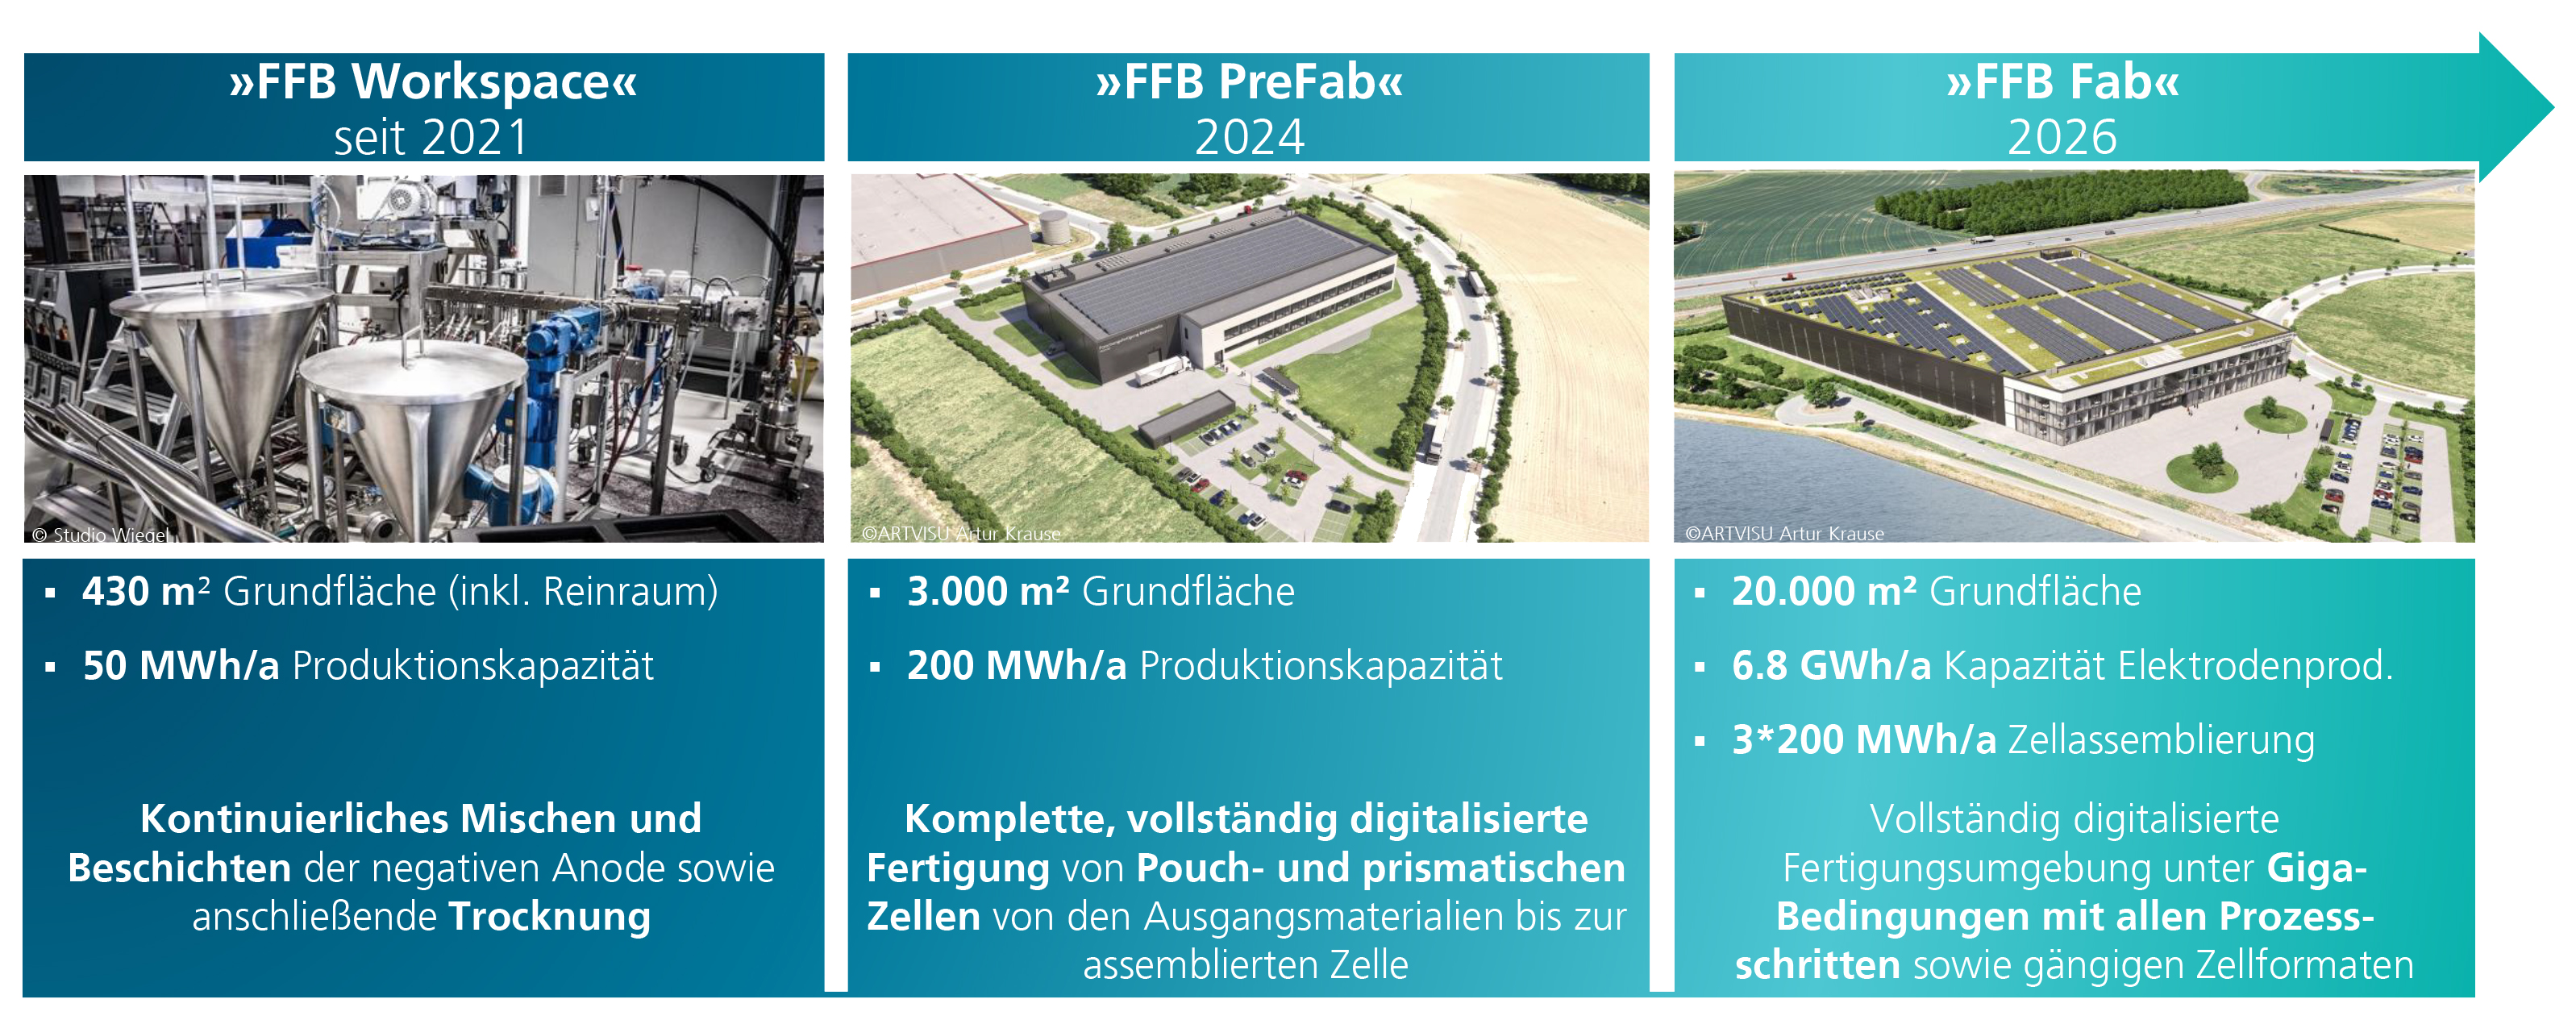 Infrastruktur der Fraunhofer FFB – Labors und Bauabschnitte